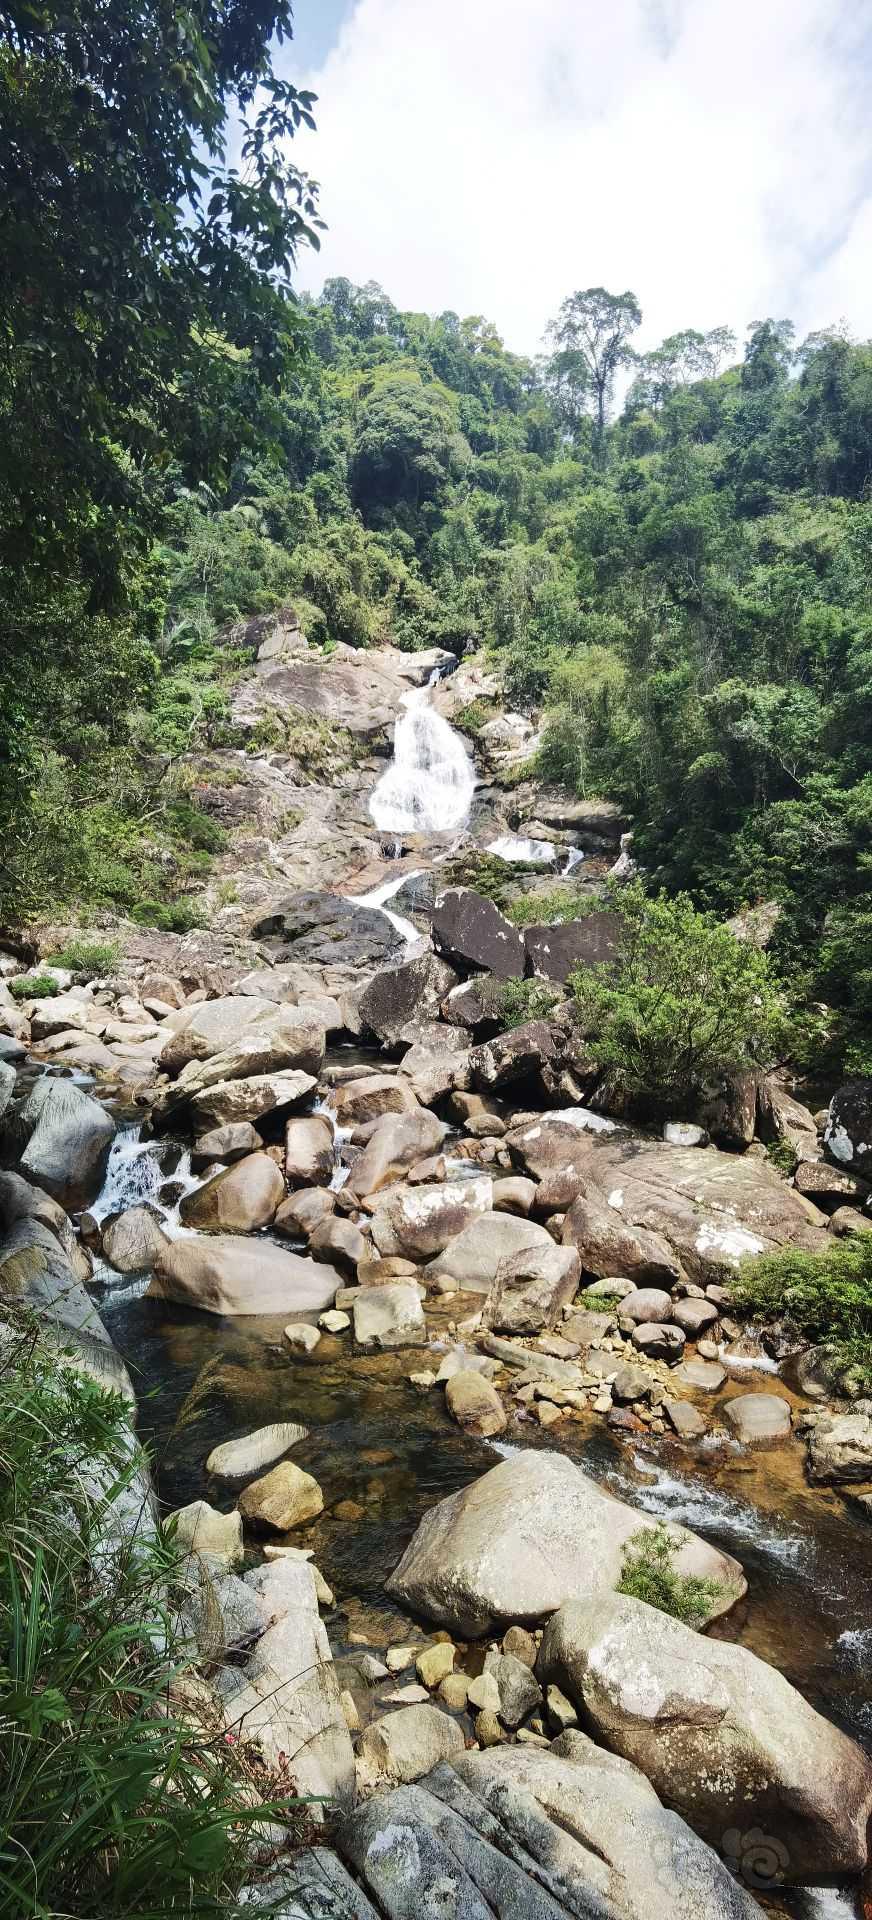 【雨林】来海南某热带雨林森林公园观摩学习一下-图2